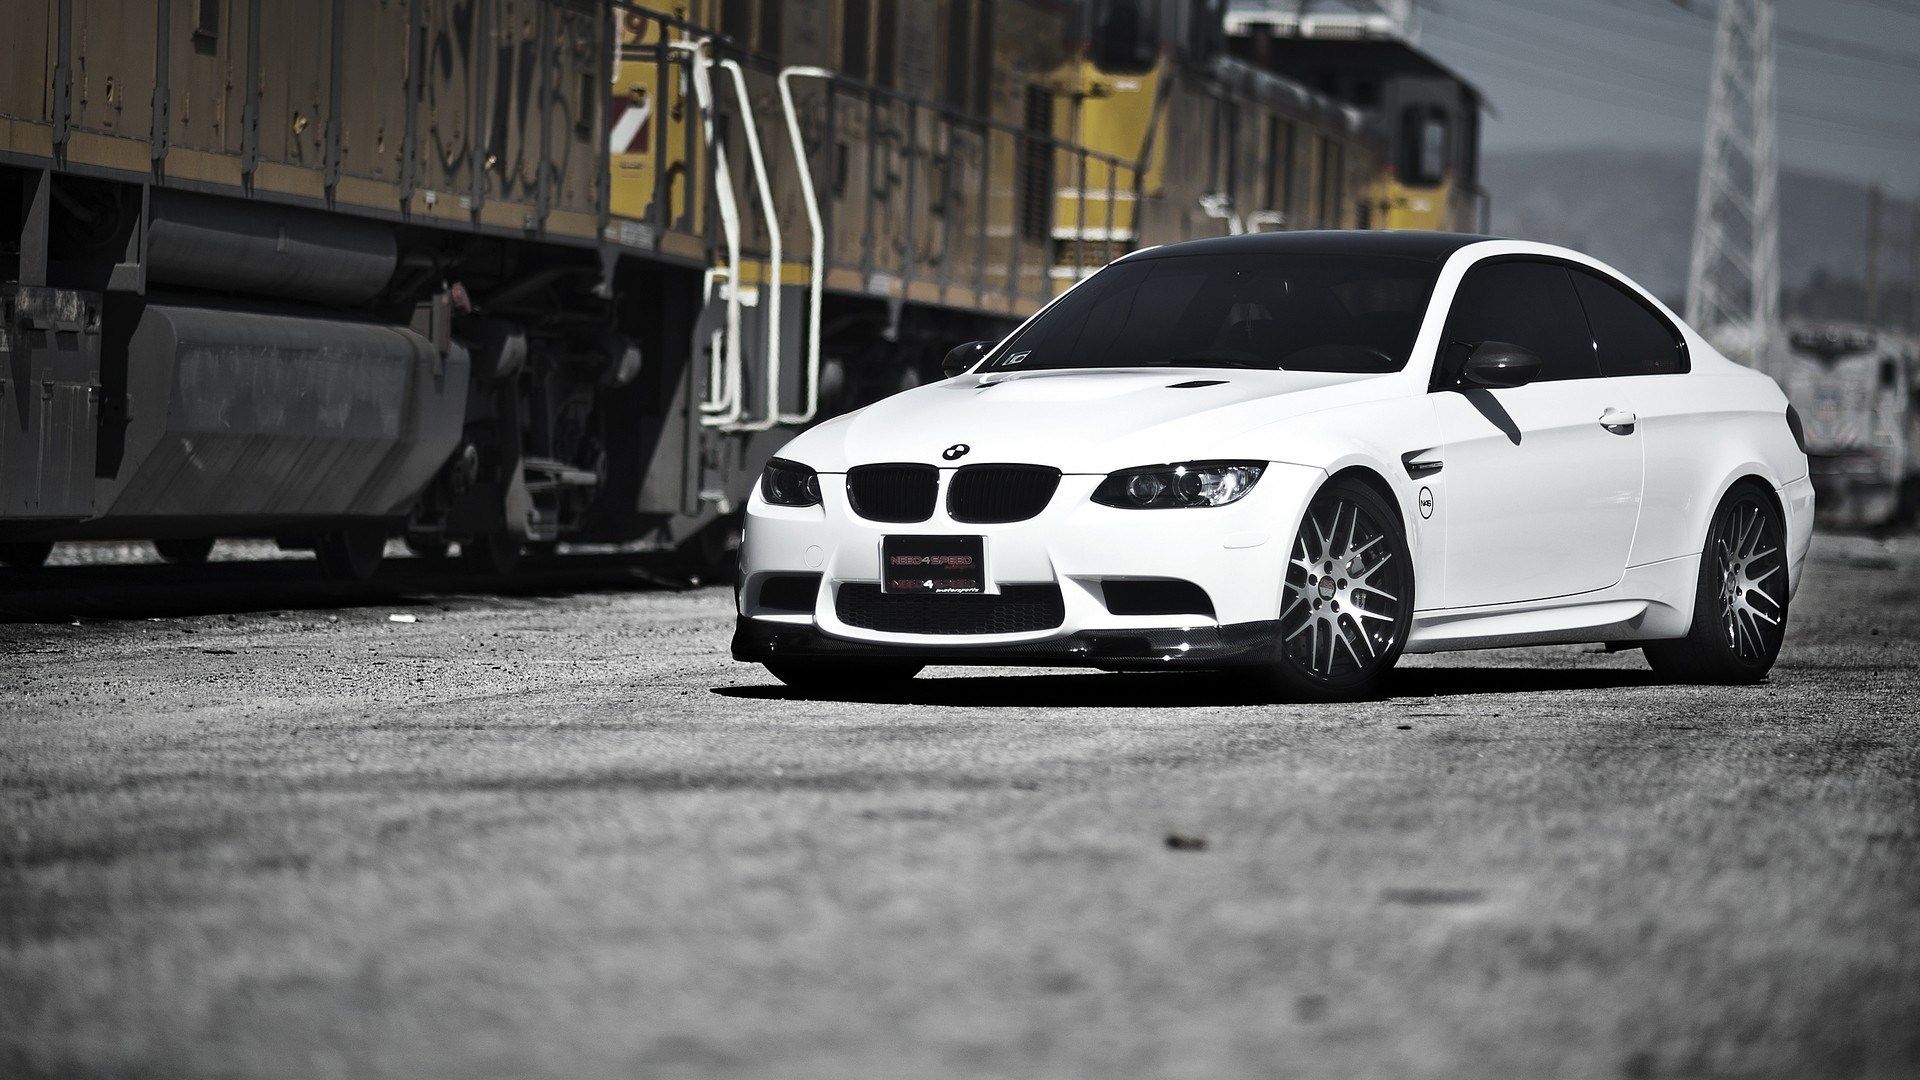 BMW E92 M3 White HD Wallpaper - FreeWallsUp